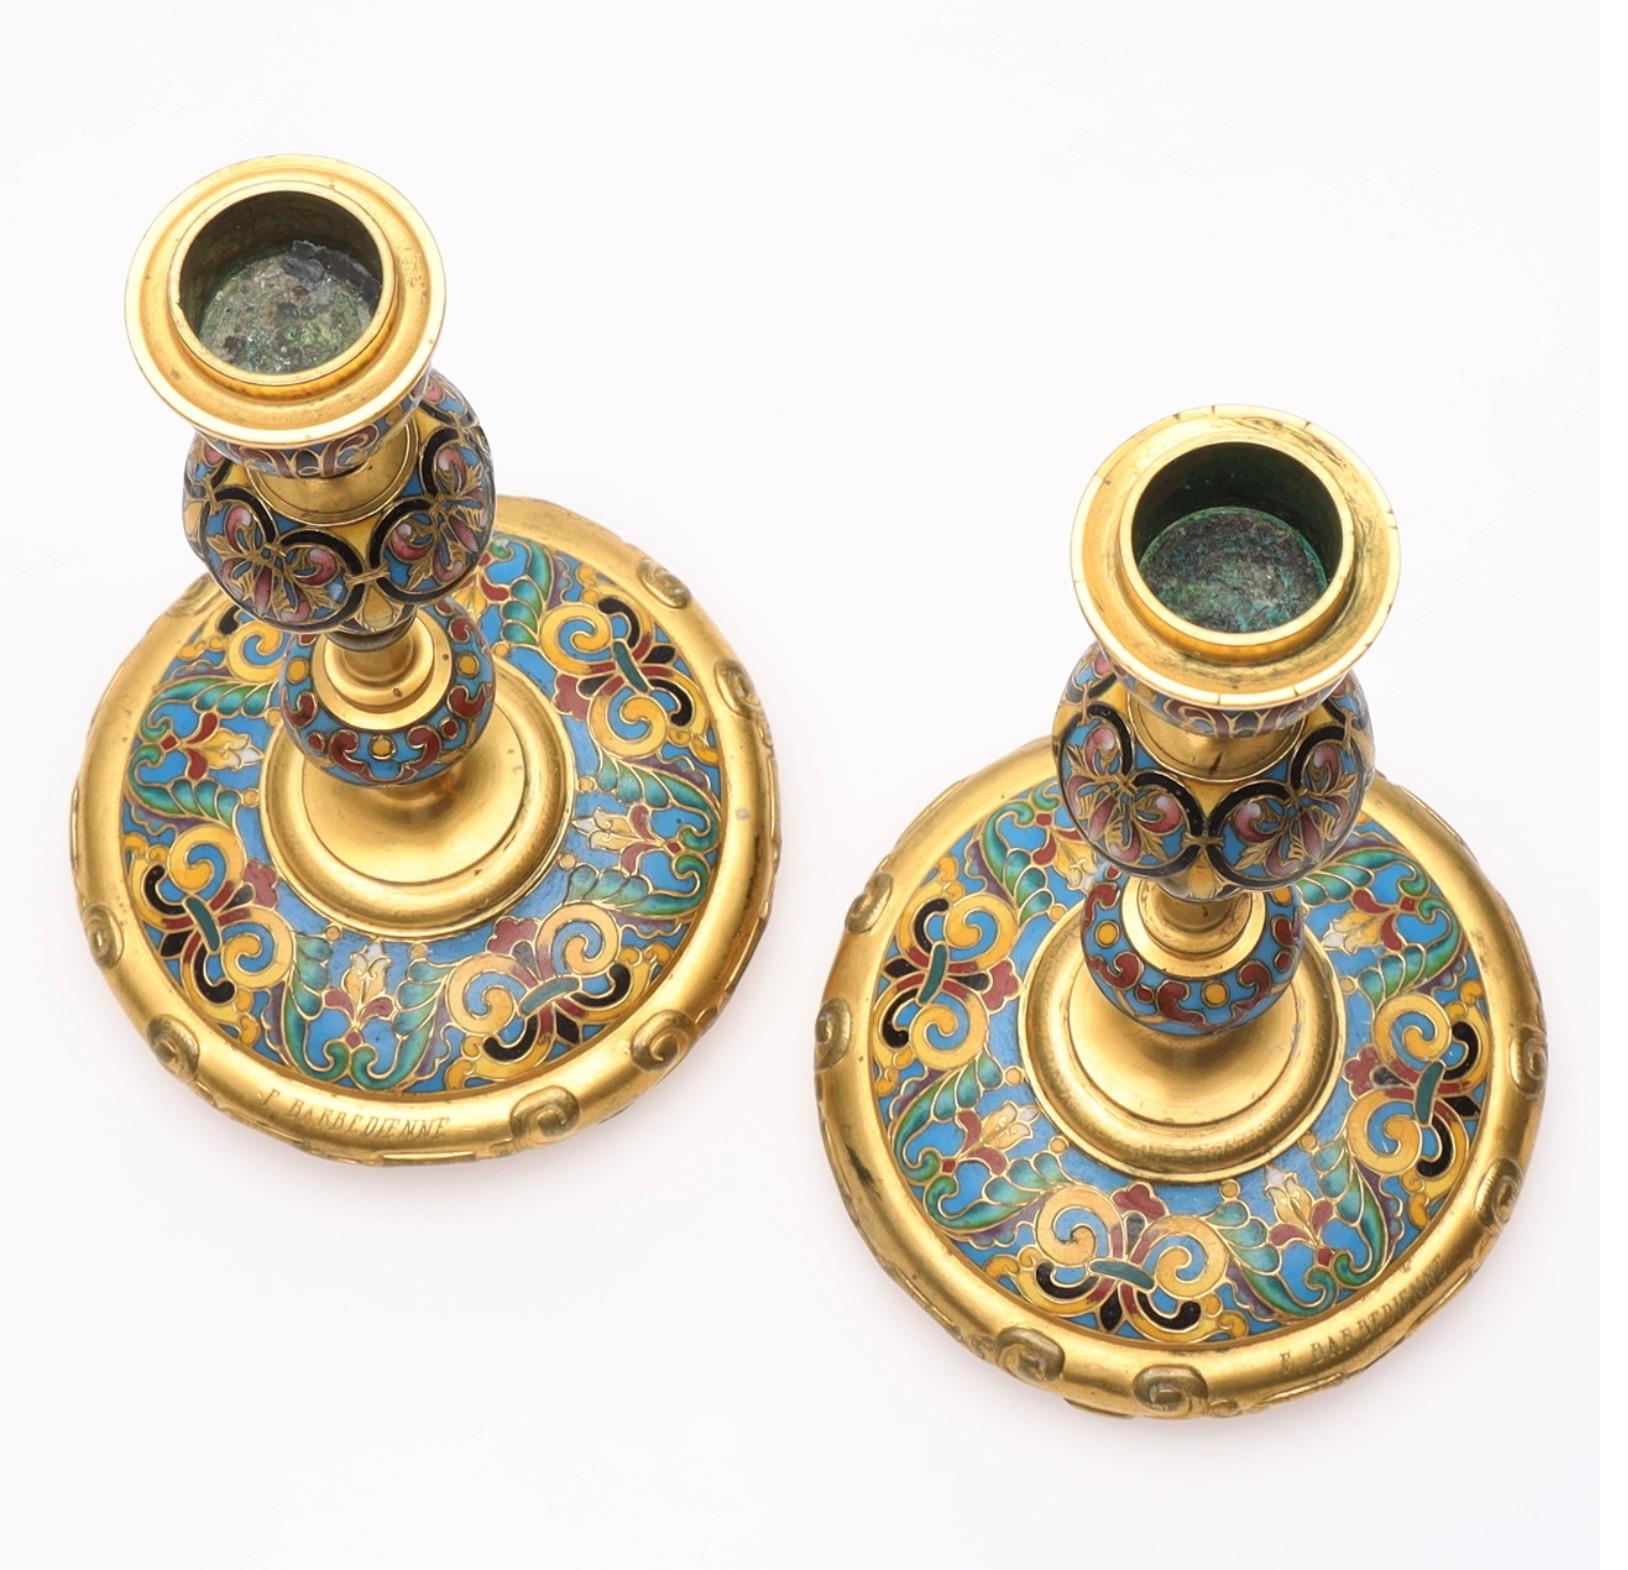 Une belle paire de chandeliers en émail champlevé de style chinoiserie par Ferdinand Barbedienne (1810 - 1892), fabriqués à Paris vers 1880. Signé 